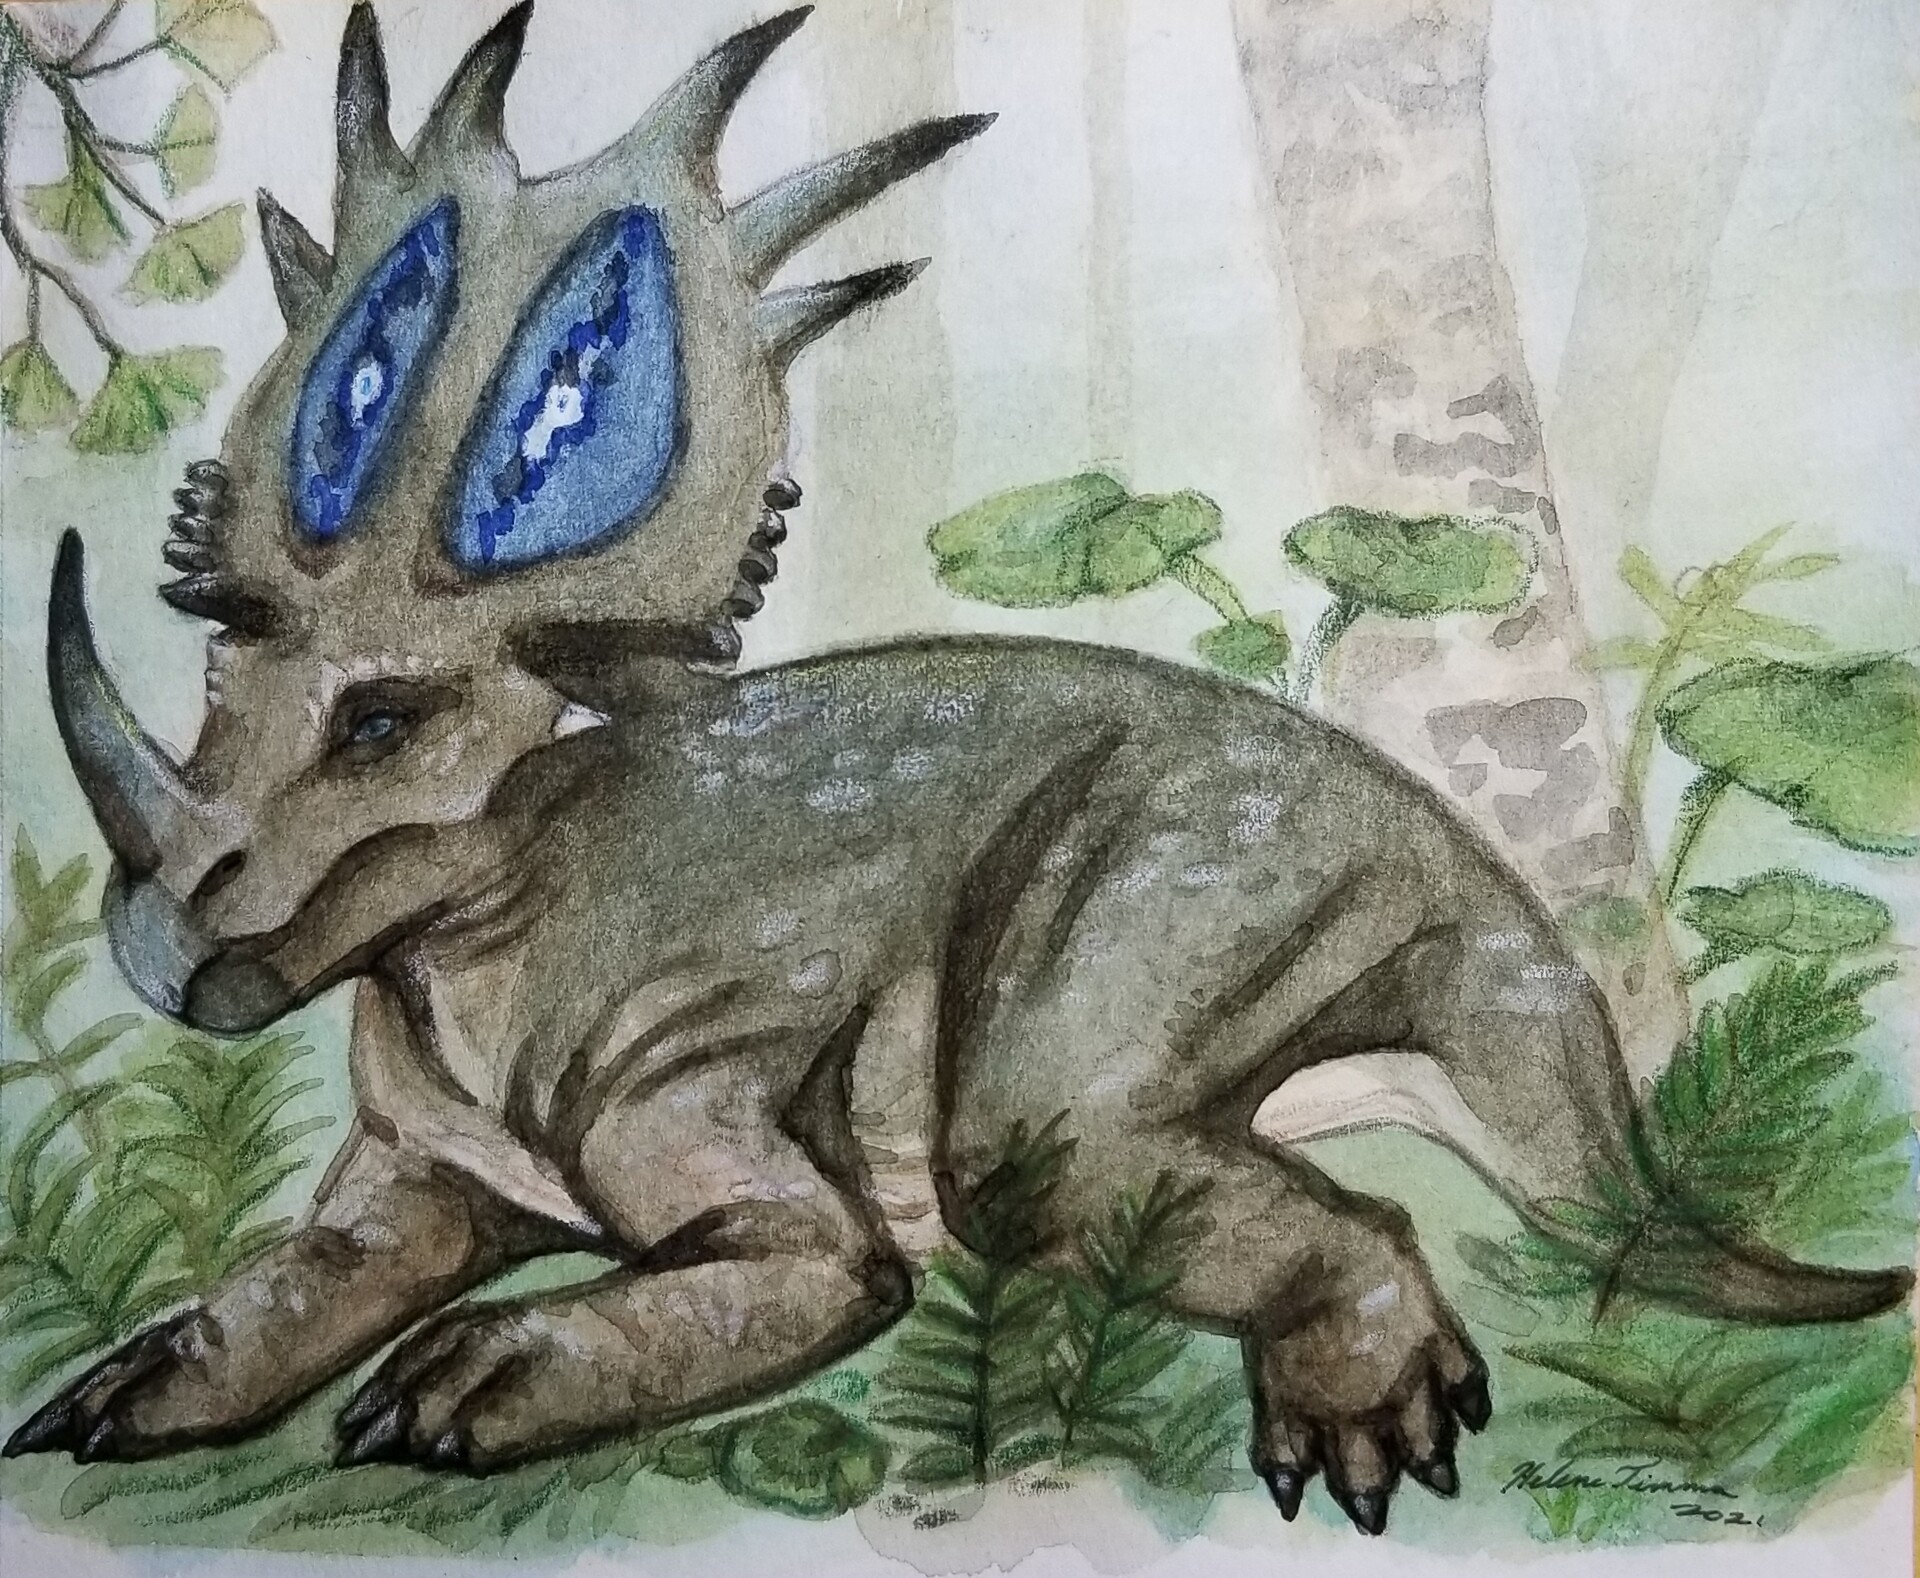 ArtStation - Styracosaurus Painting